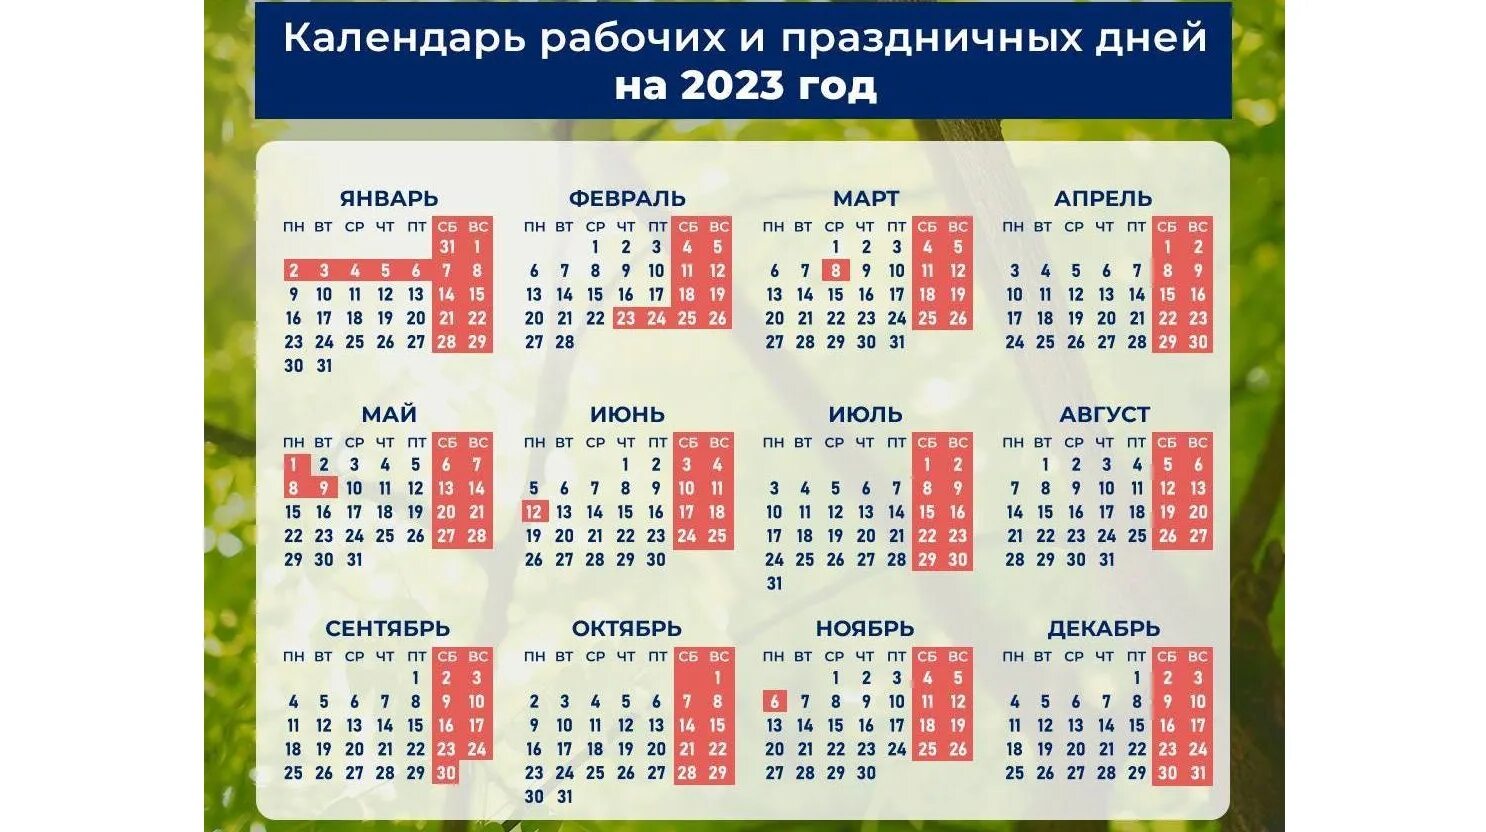 Как работаем и отдыхаем на майские. Календарь праздников. Календарные праздники на 2023 год. Календарь праздников новый год 2023 в России. Календарь праздников на 2023 год в РО.